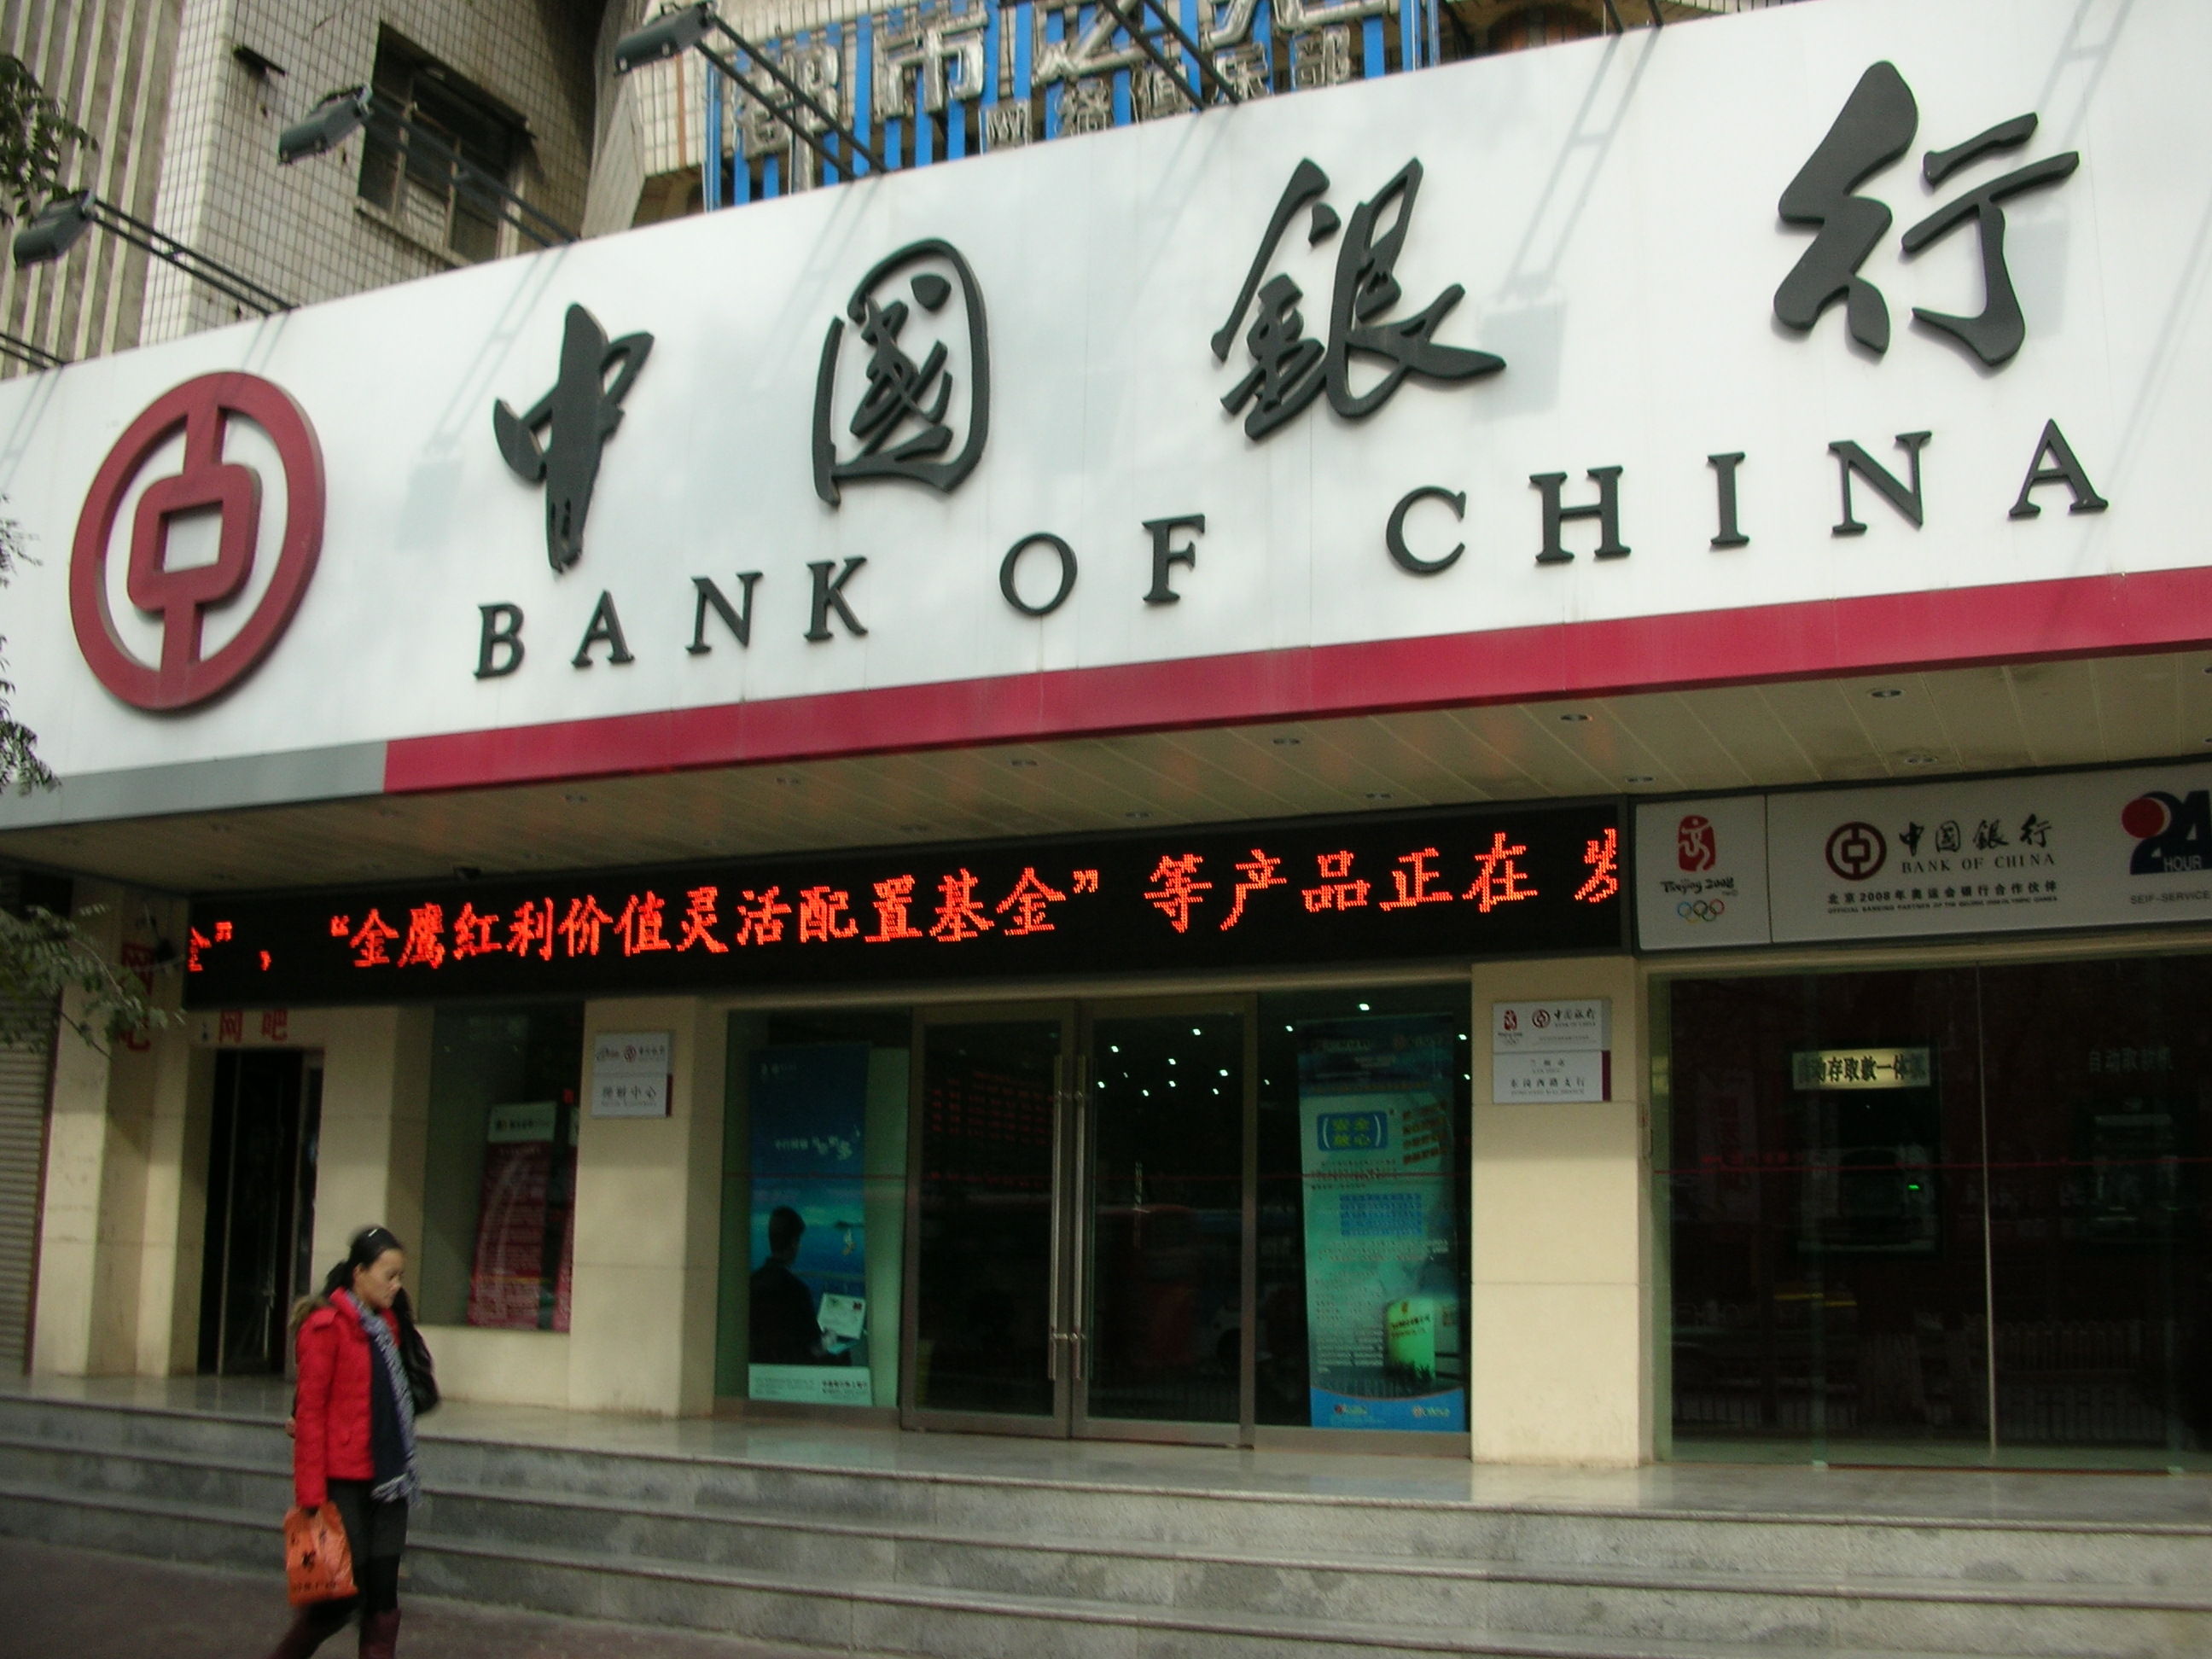 Bank of china китай. Банк Китая. Bank of China в России. Сельскохозяйственный банк Китая. Народный банк Китая.